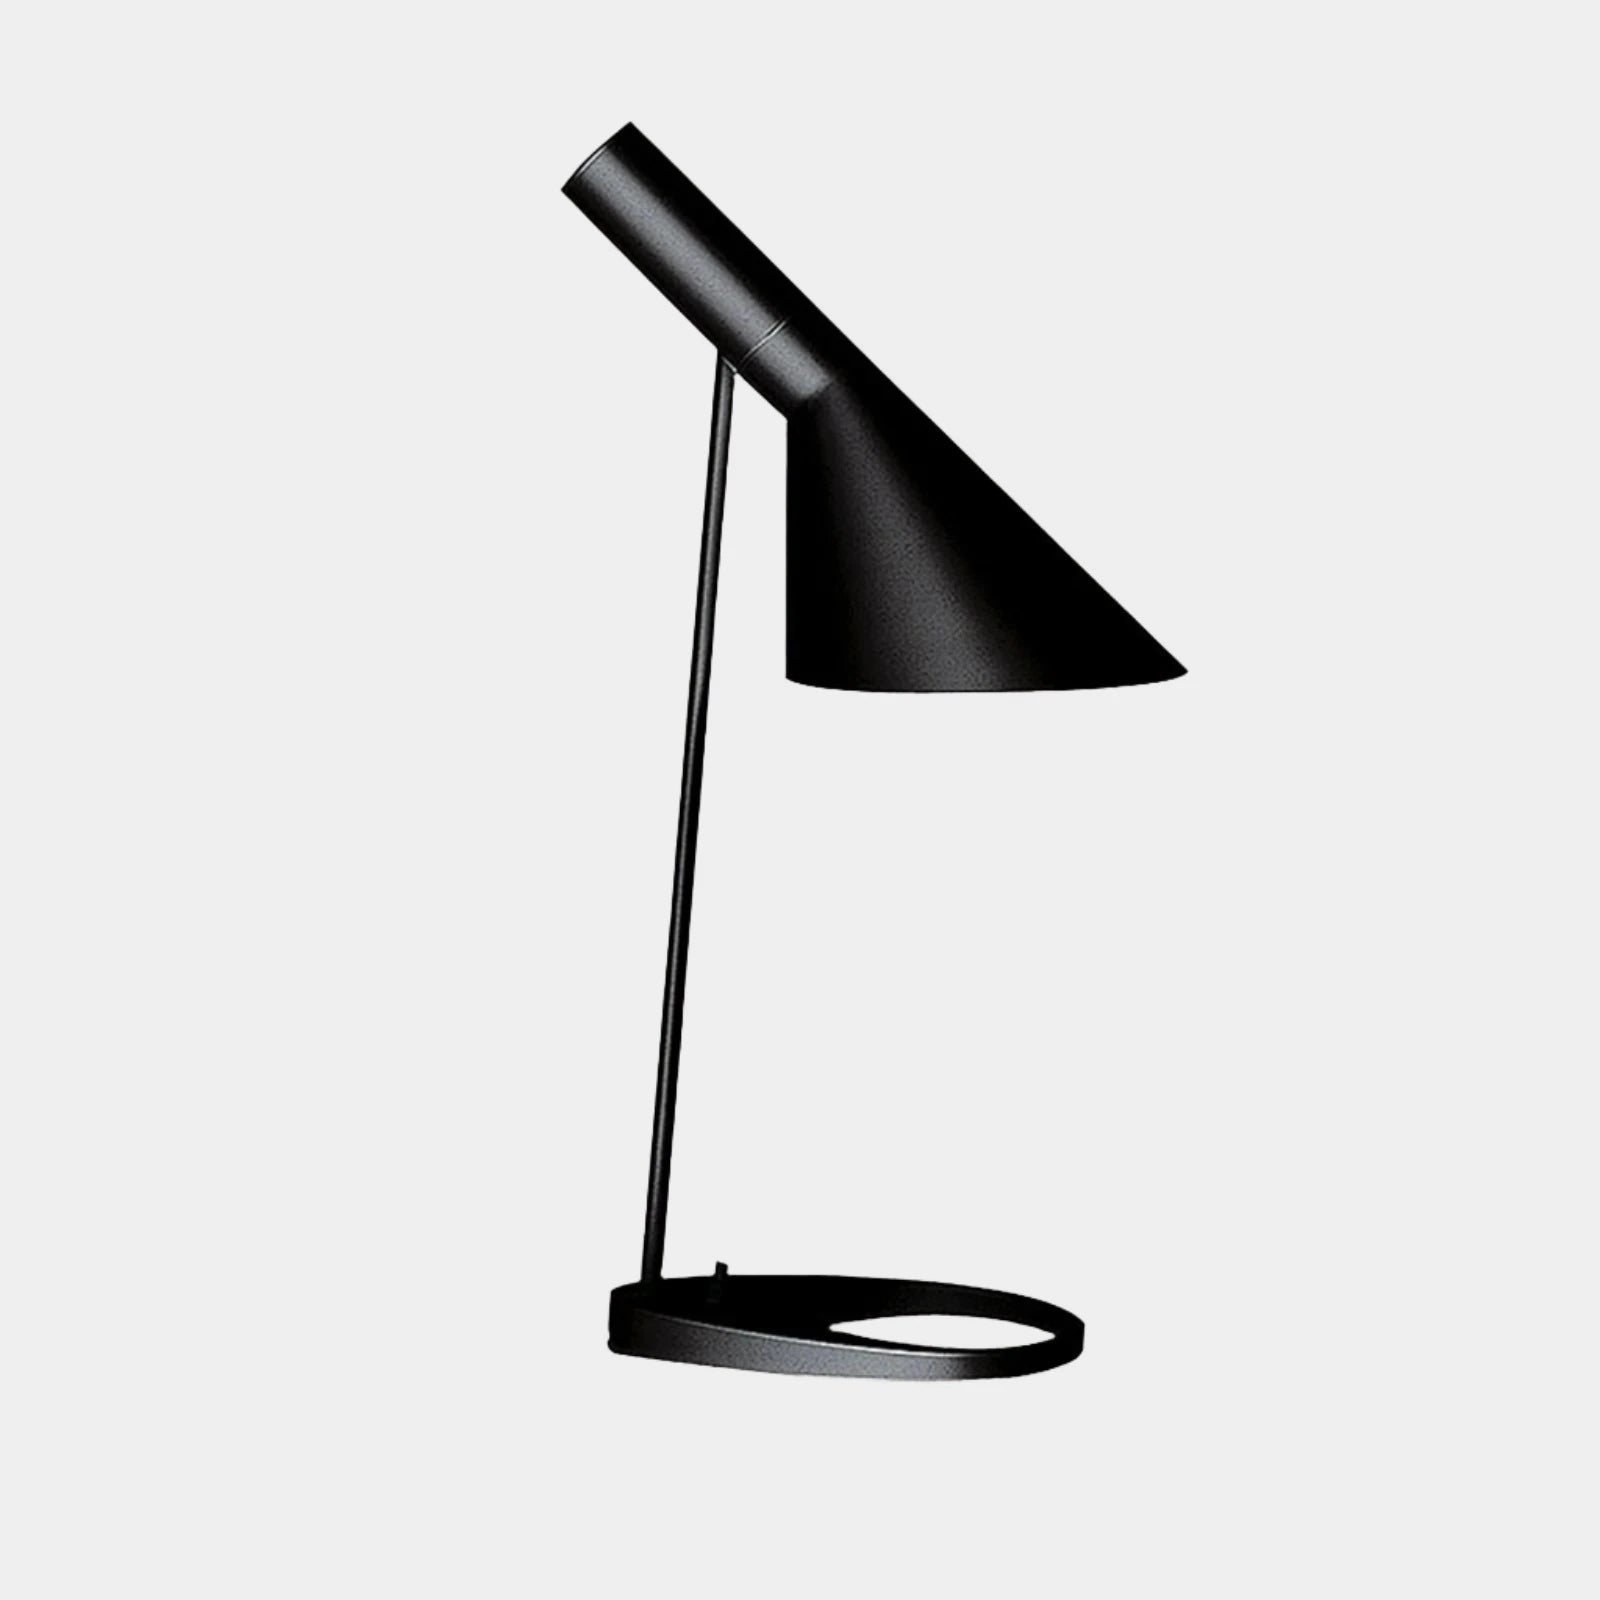 Arne Jacobsen's AJ Table Lamp